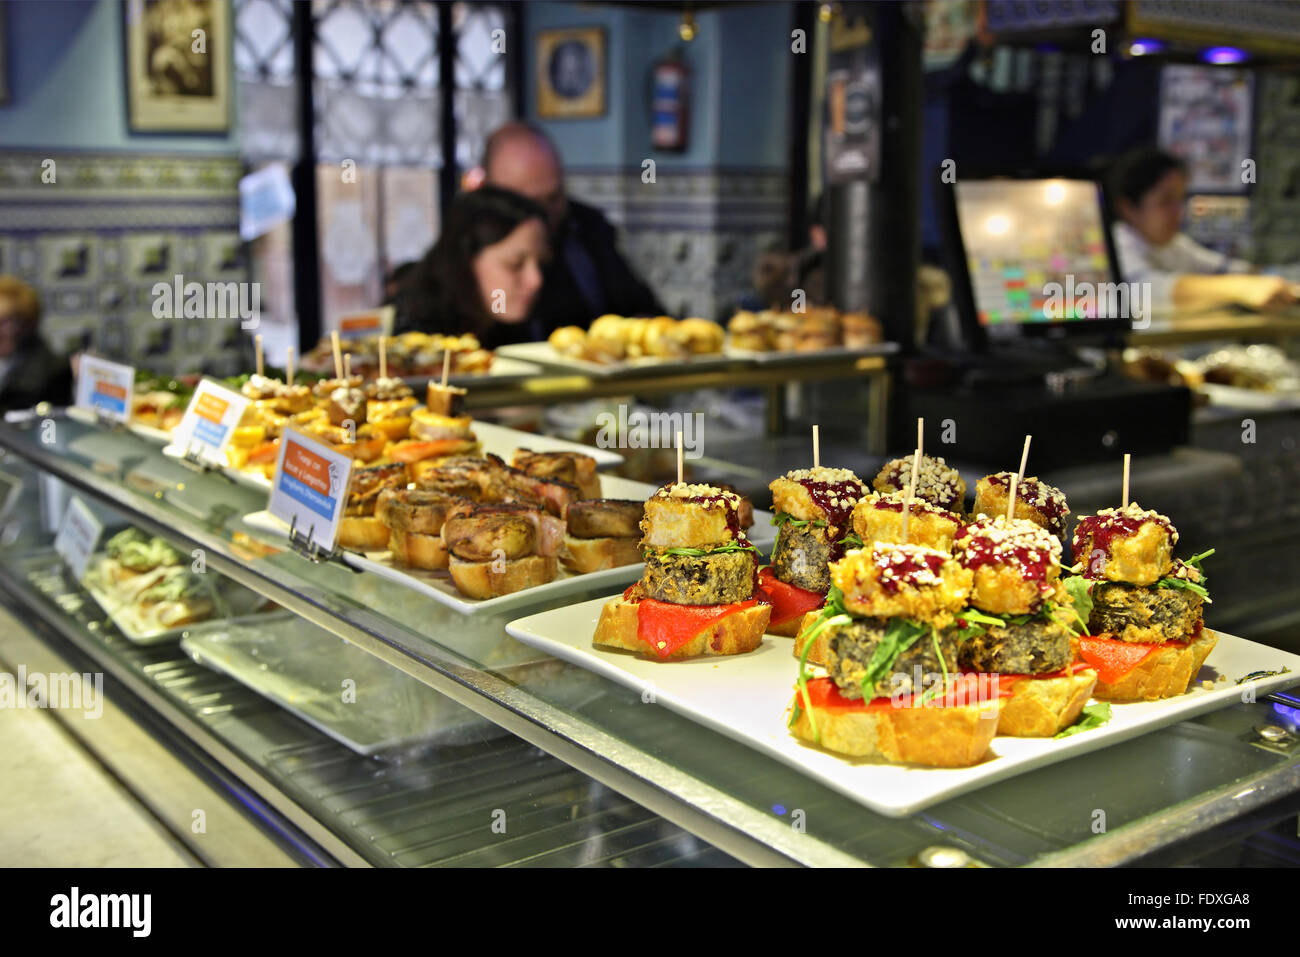 Im Baskenland (Pais Vasco) finden Sie die besten Pintxo-Τapas-Βars von Spanien. Hier zählt das "Cafe Bilbao" in Bilbao. Stockfoto